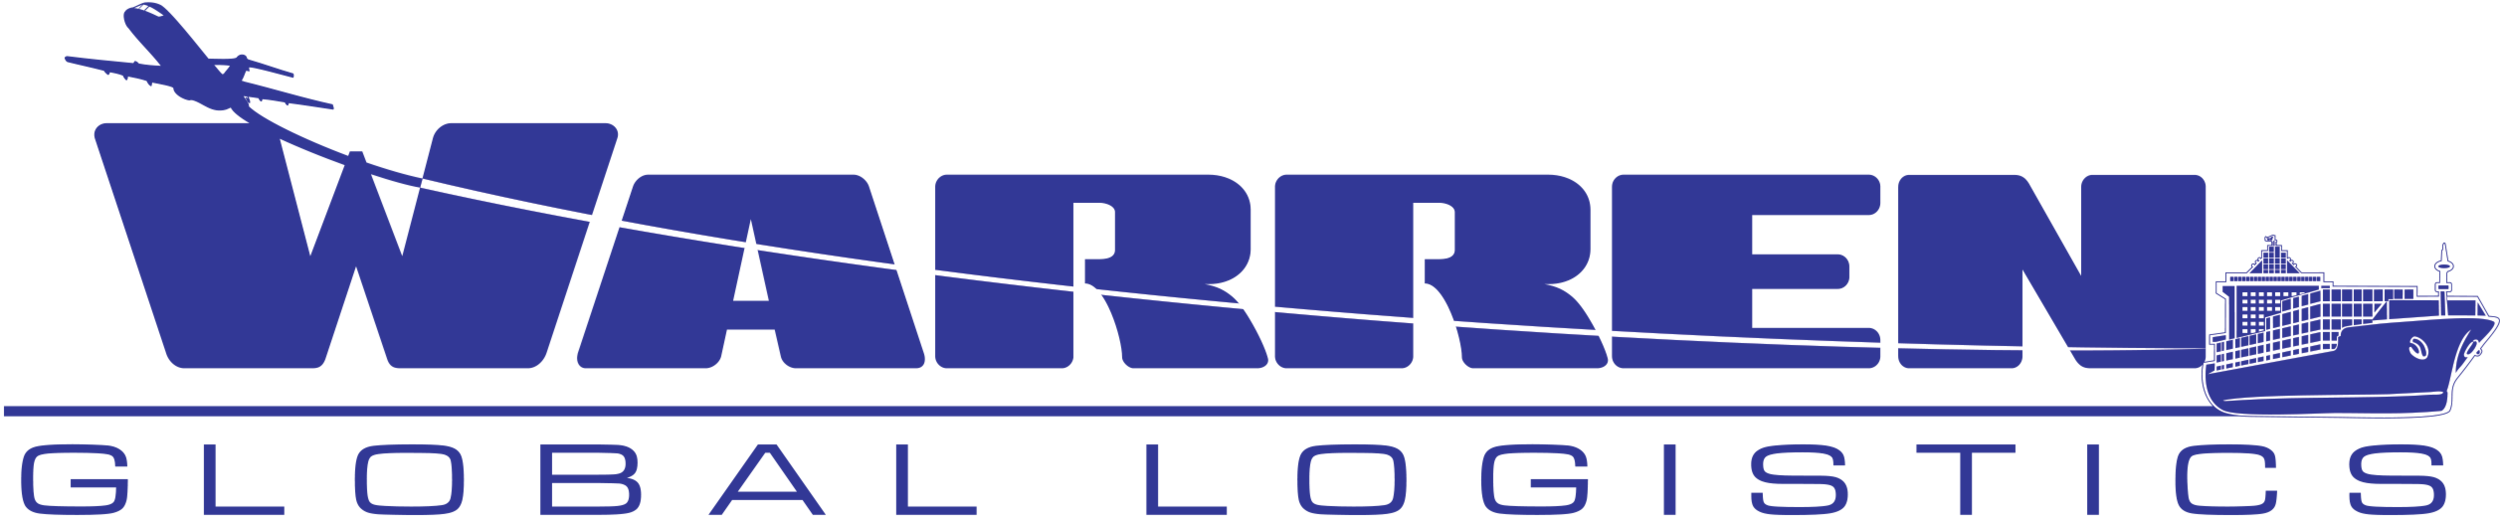 warren-logo-muted.png